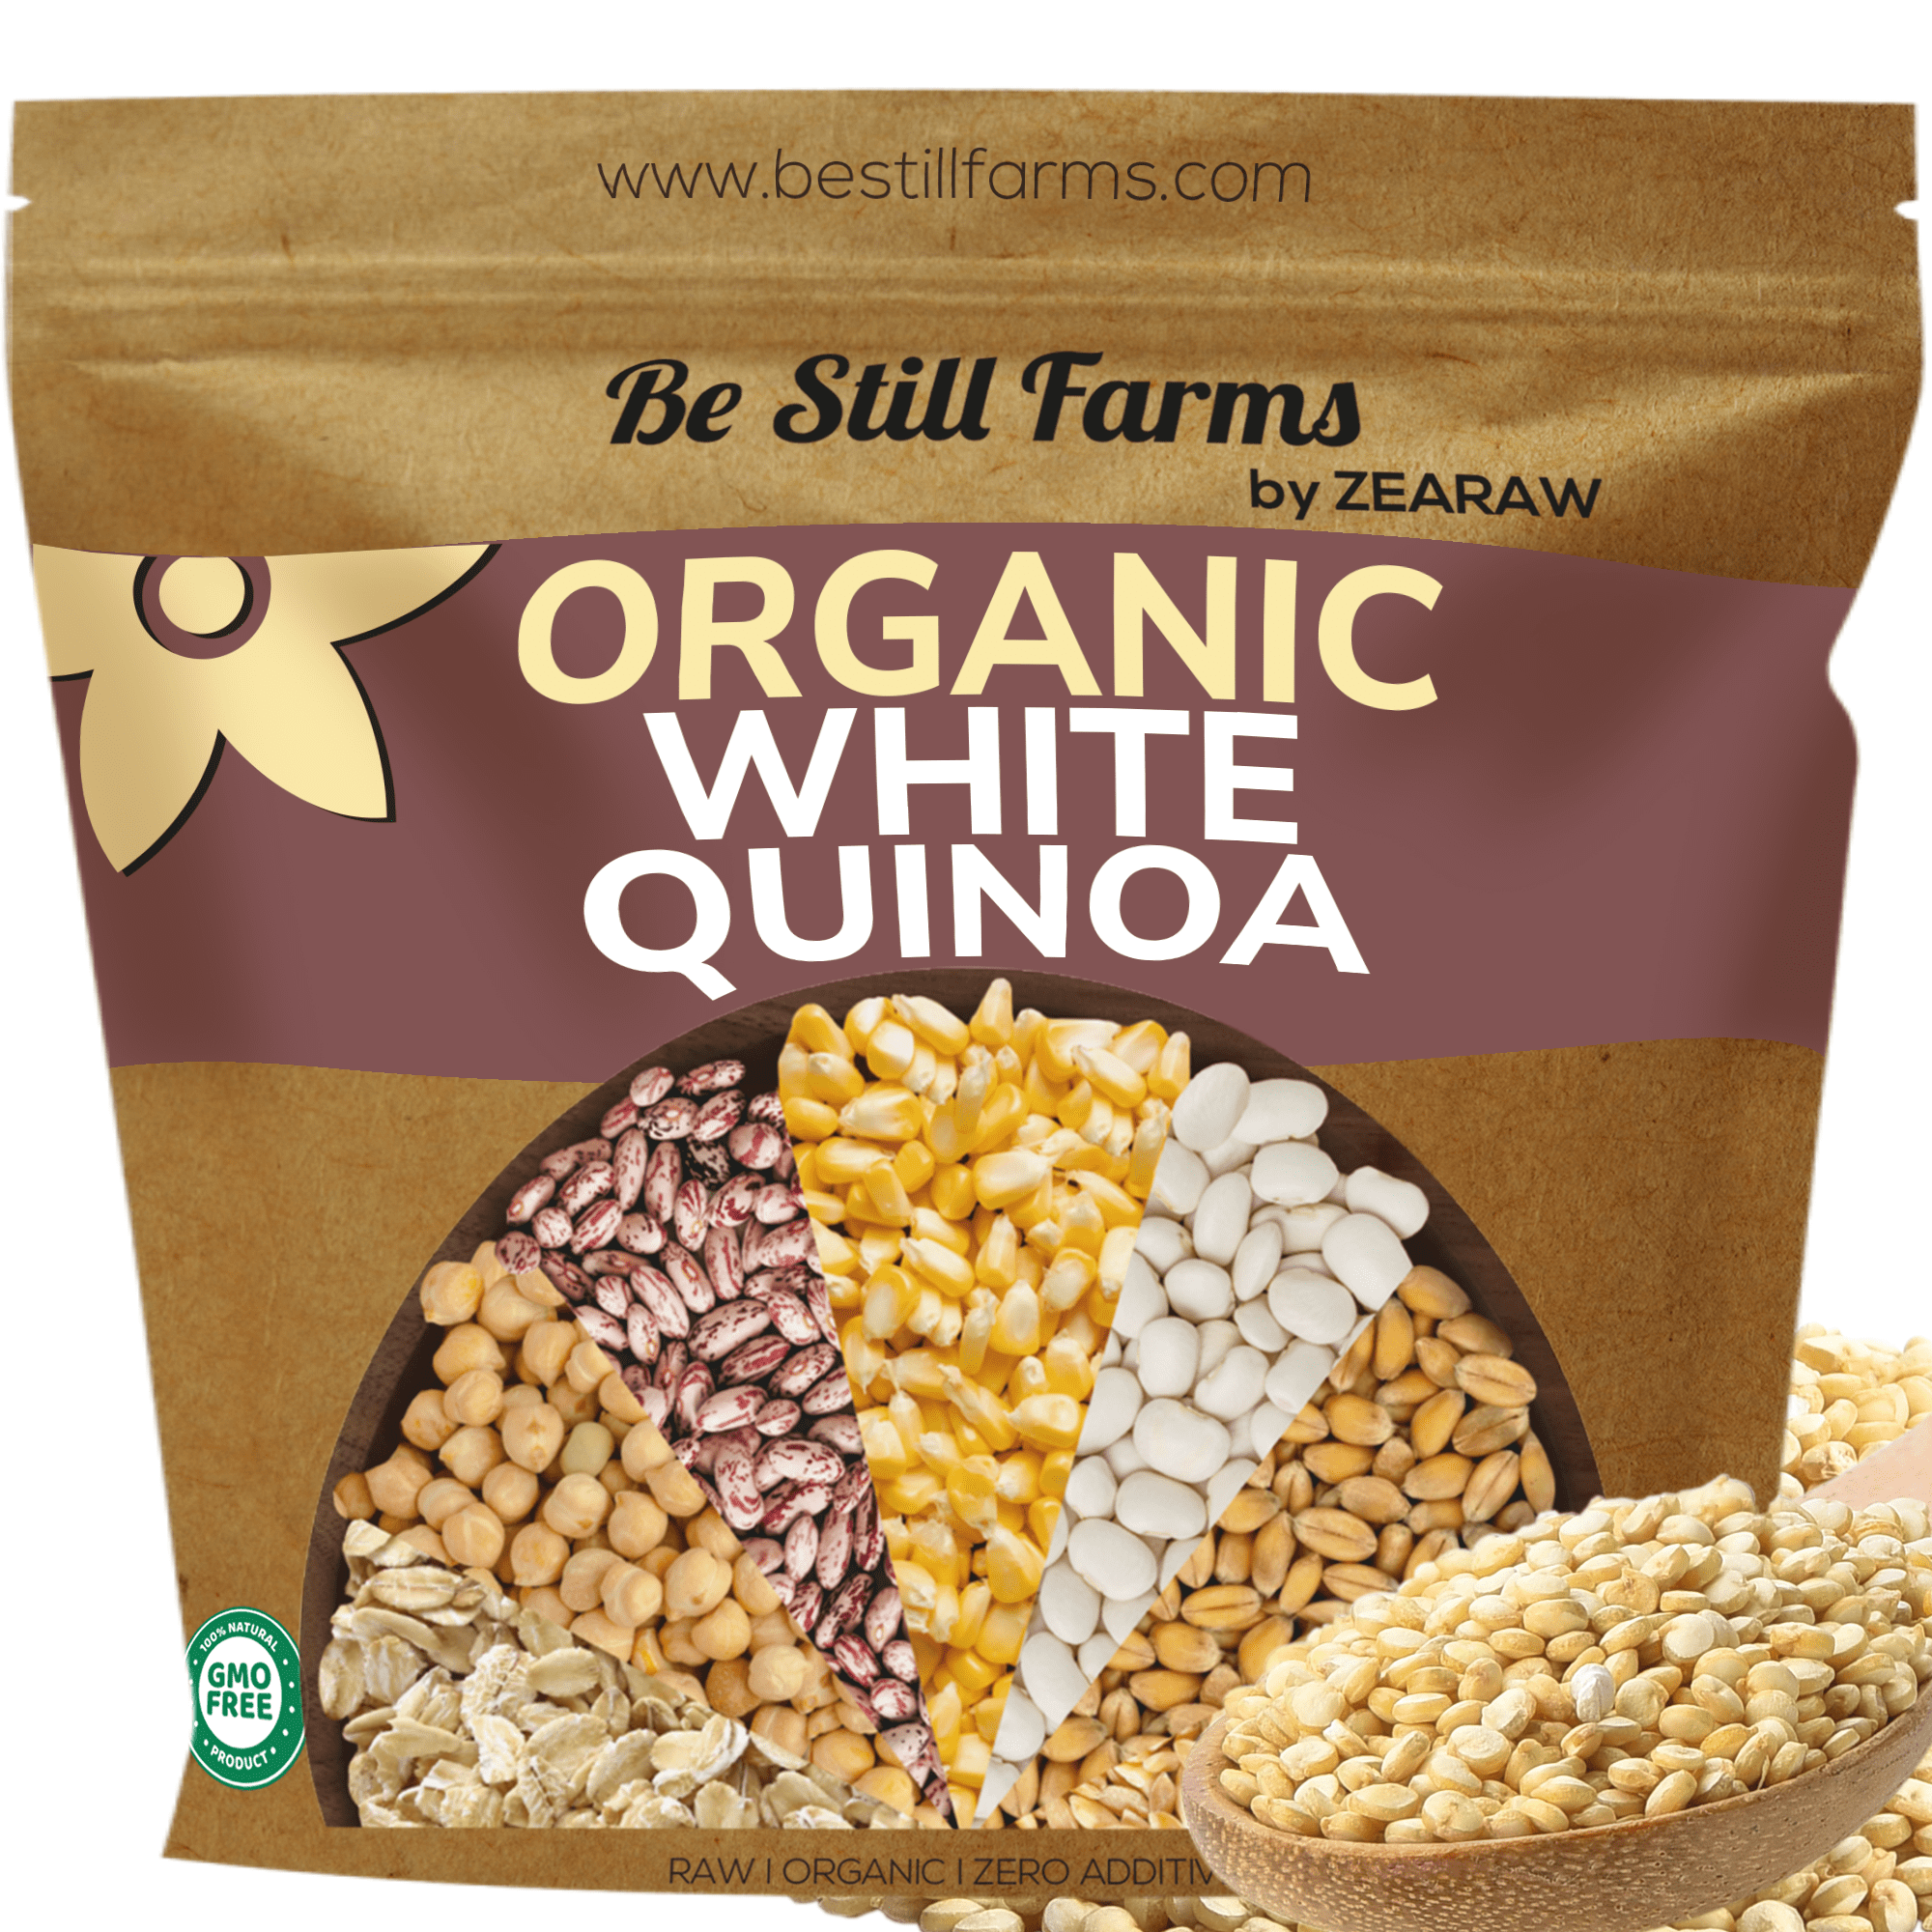 Organic White Quinoa - Be Still Farms